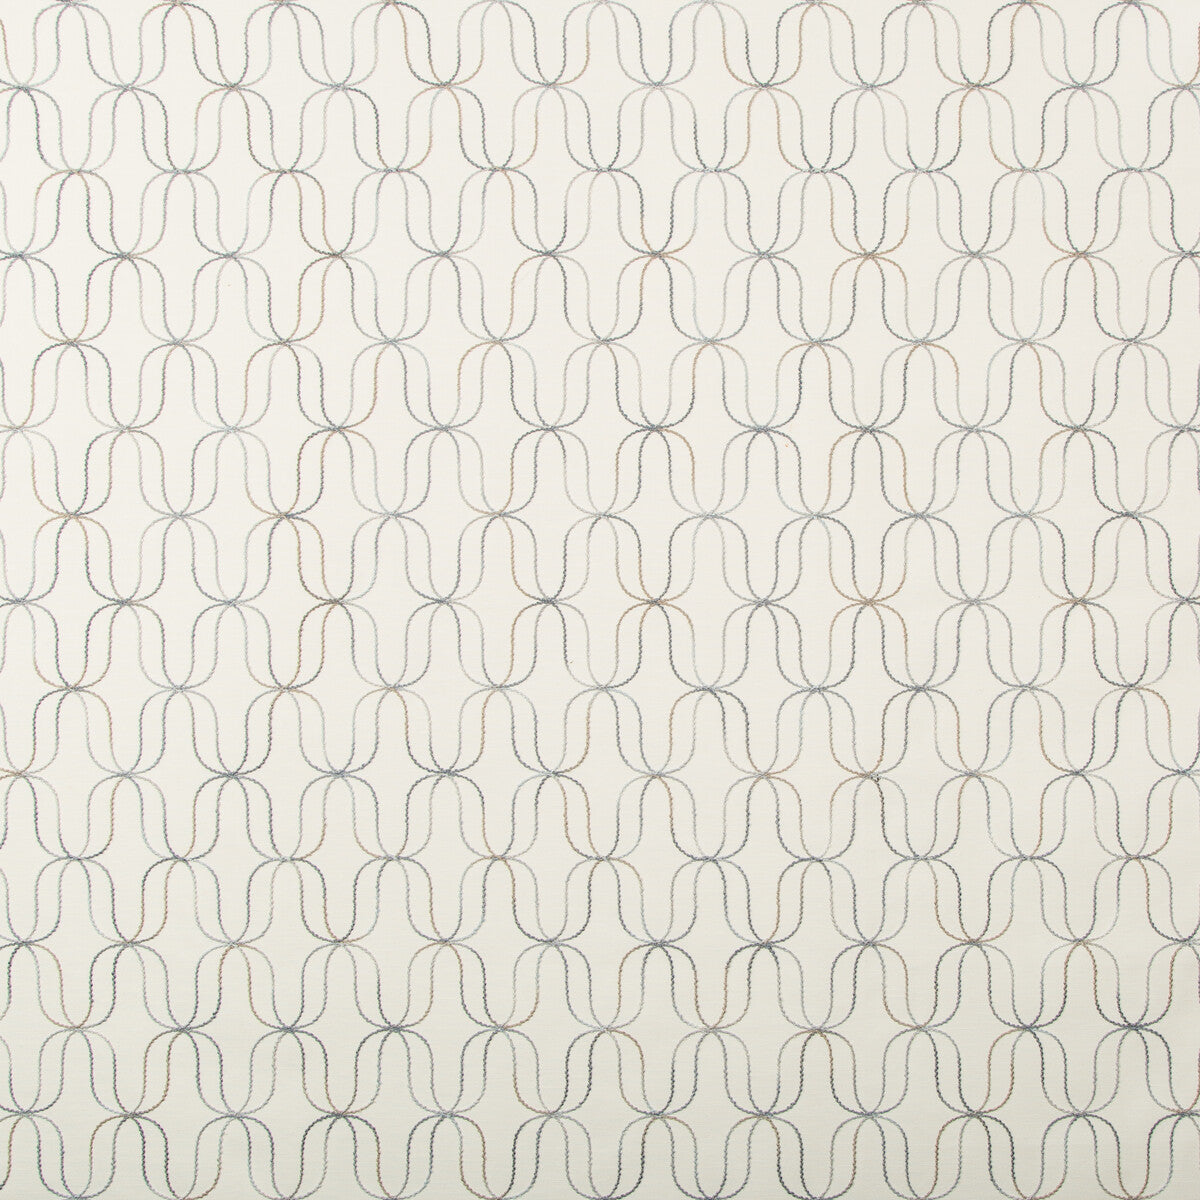 Kravet Basics fabric in 4689-21 color - pattern 4689.21.0 - by Kravet Basics